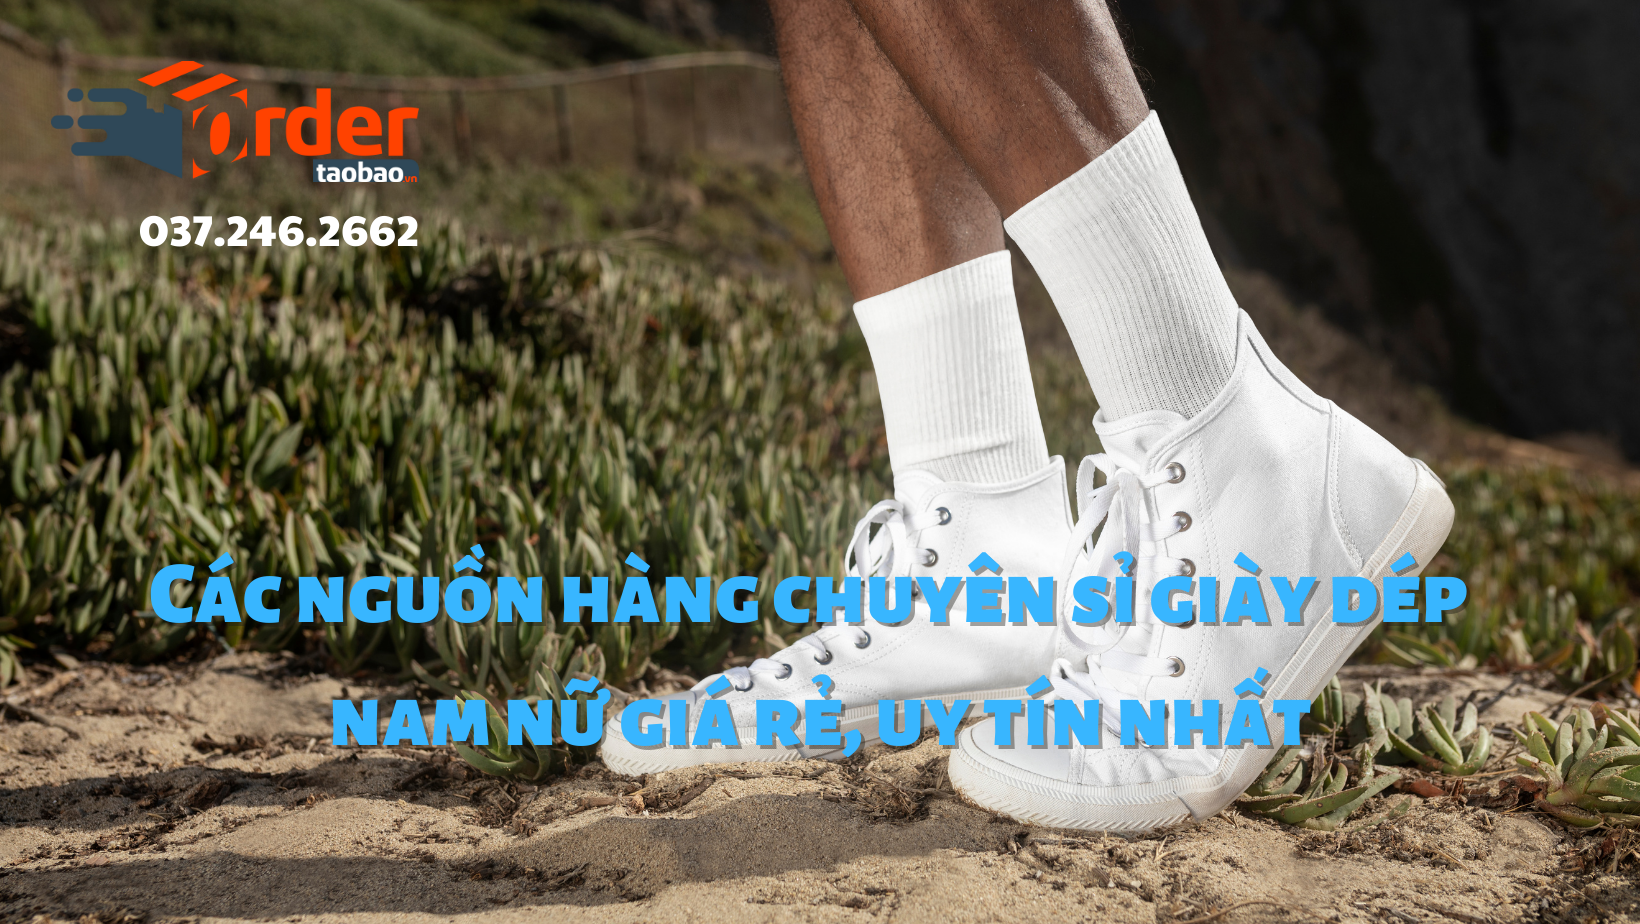 Bật mí nguồn hàng sỉ giày dép rẻ nhất ở Hà Nội và TP.HCM